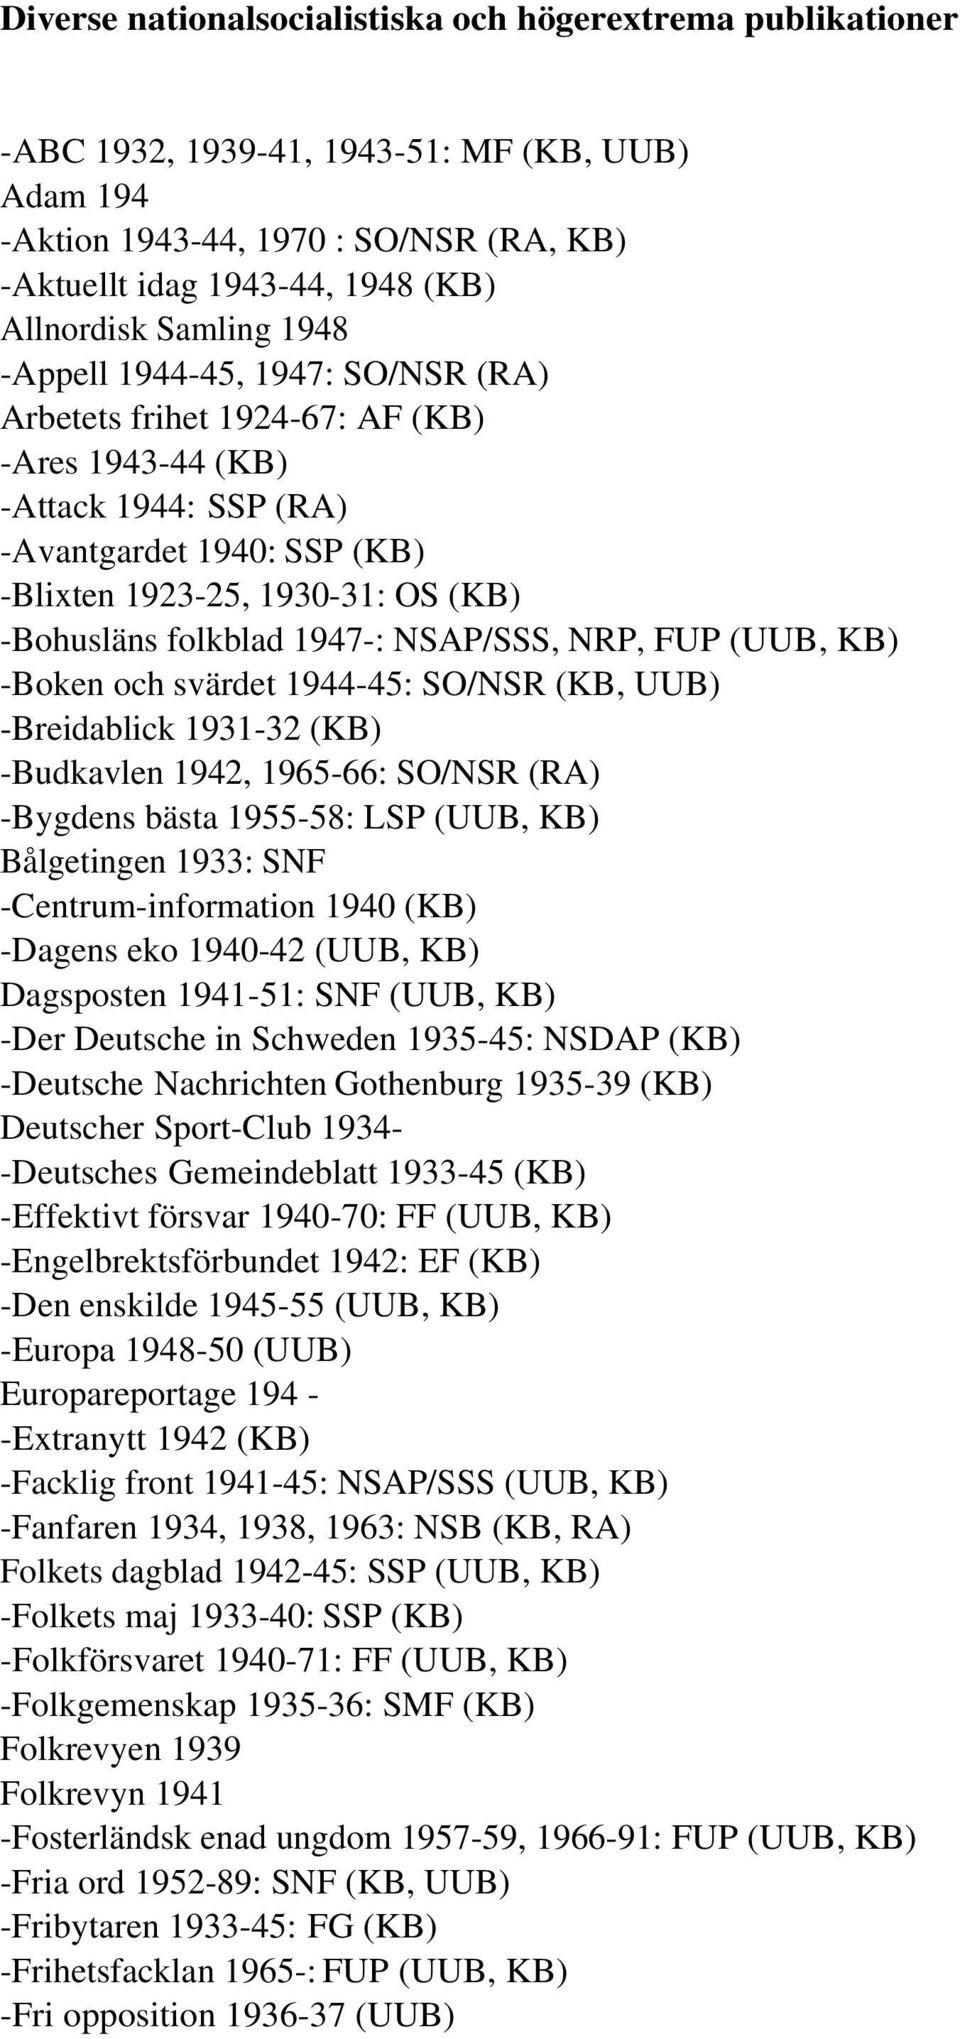 folkblad 1947-: NSAP/SSS, NRP, FUP (UUB, KB) -Boken och svärdet 1944-45: SO/NSR (KB, UUB) -Breidablick 1931-32 (KB) -Budkavlen 1942, 1965-66: SO/NSR (RA) -Bygdens bästa 1955-58: LSP (UUB, KB)